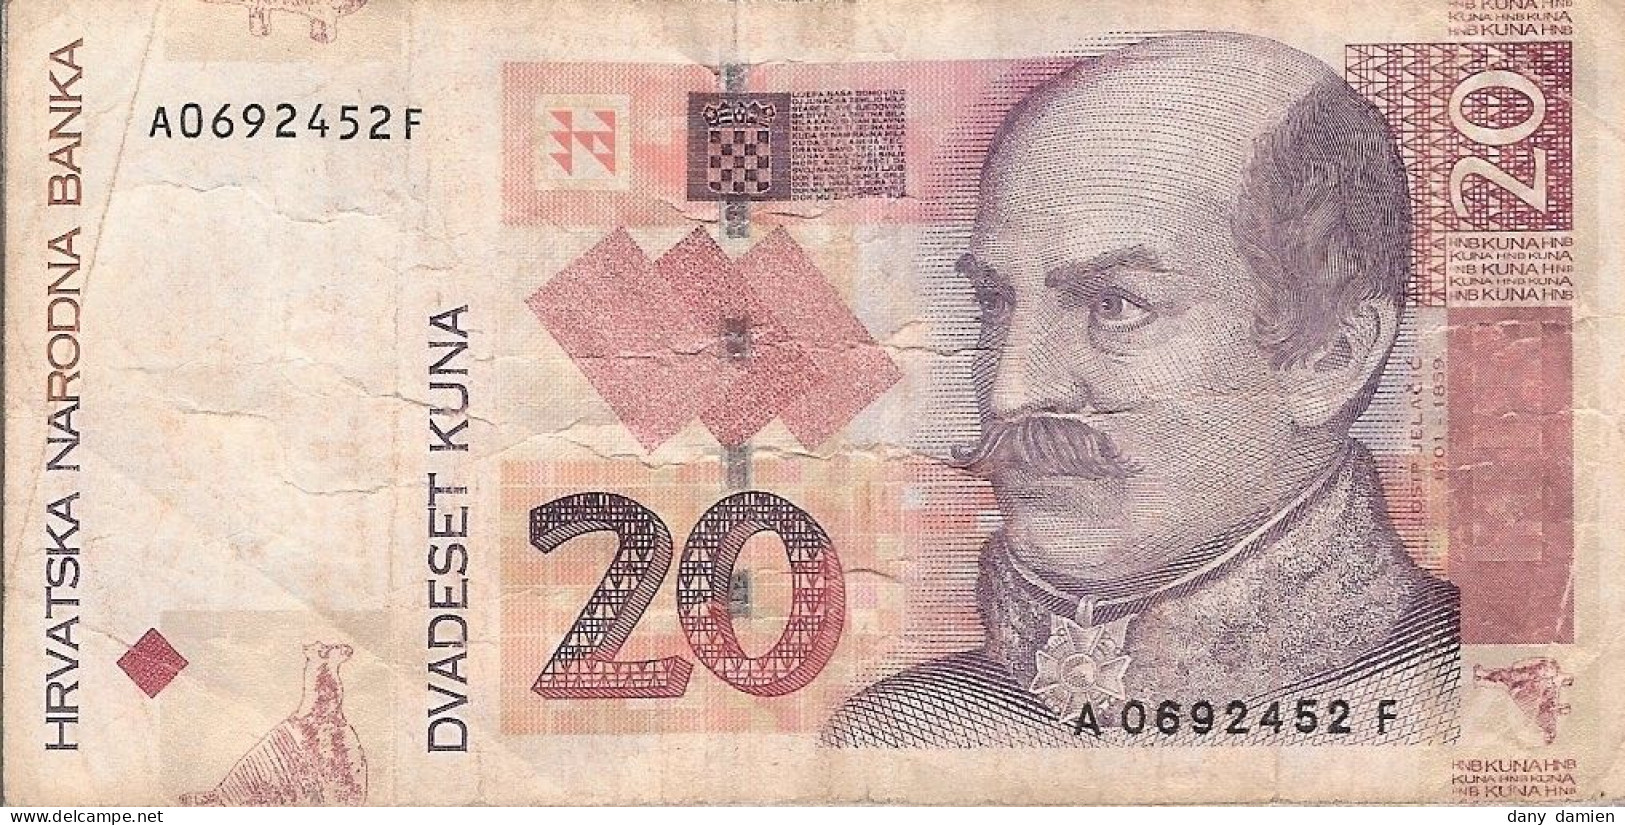 CROATIE - Billet De 20 KUNA - Année 2001 (Numéroté A0692452F) - Croatie